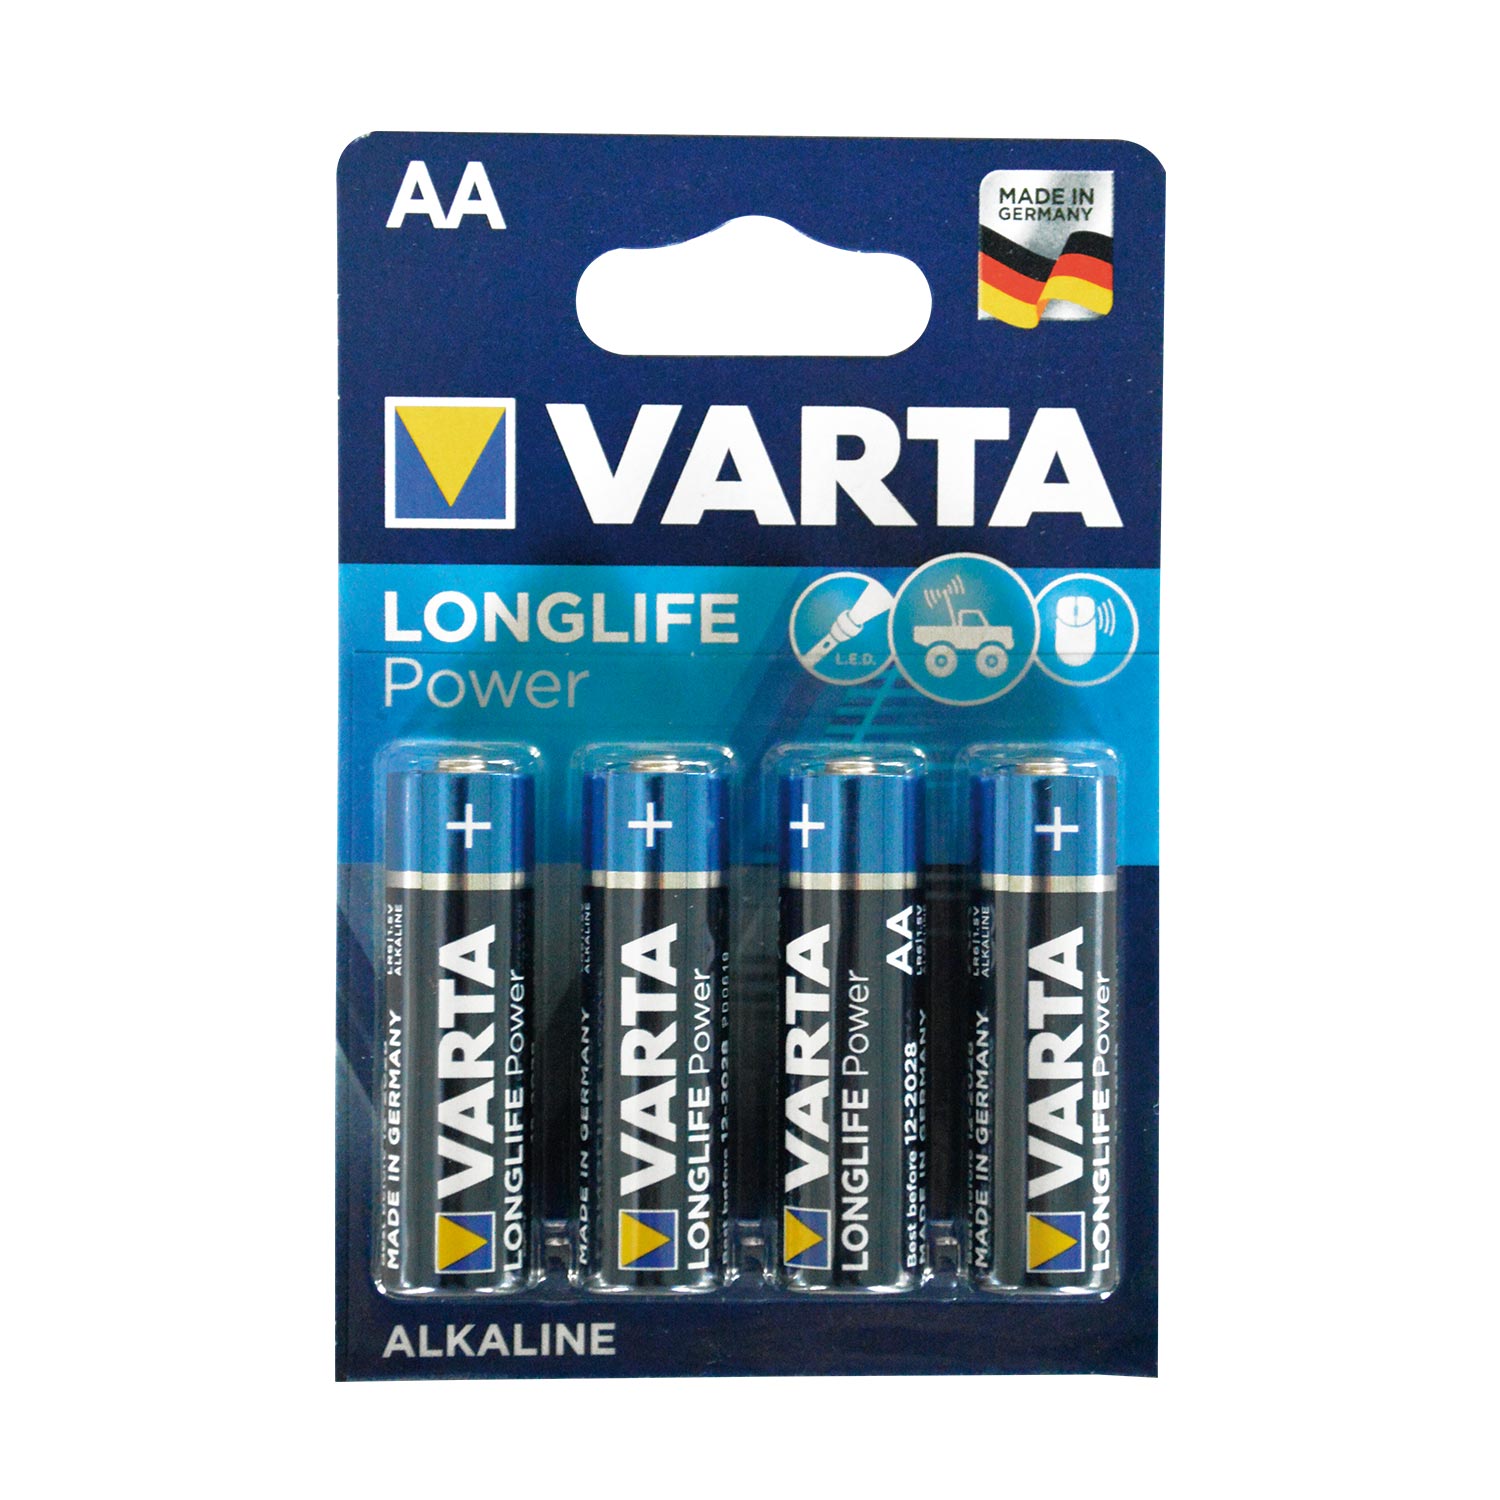 Varta LongLife Power 4906 Batterien R6 AA Mignon 1,5V 4er